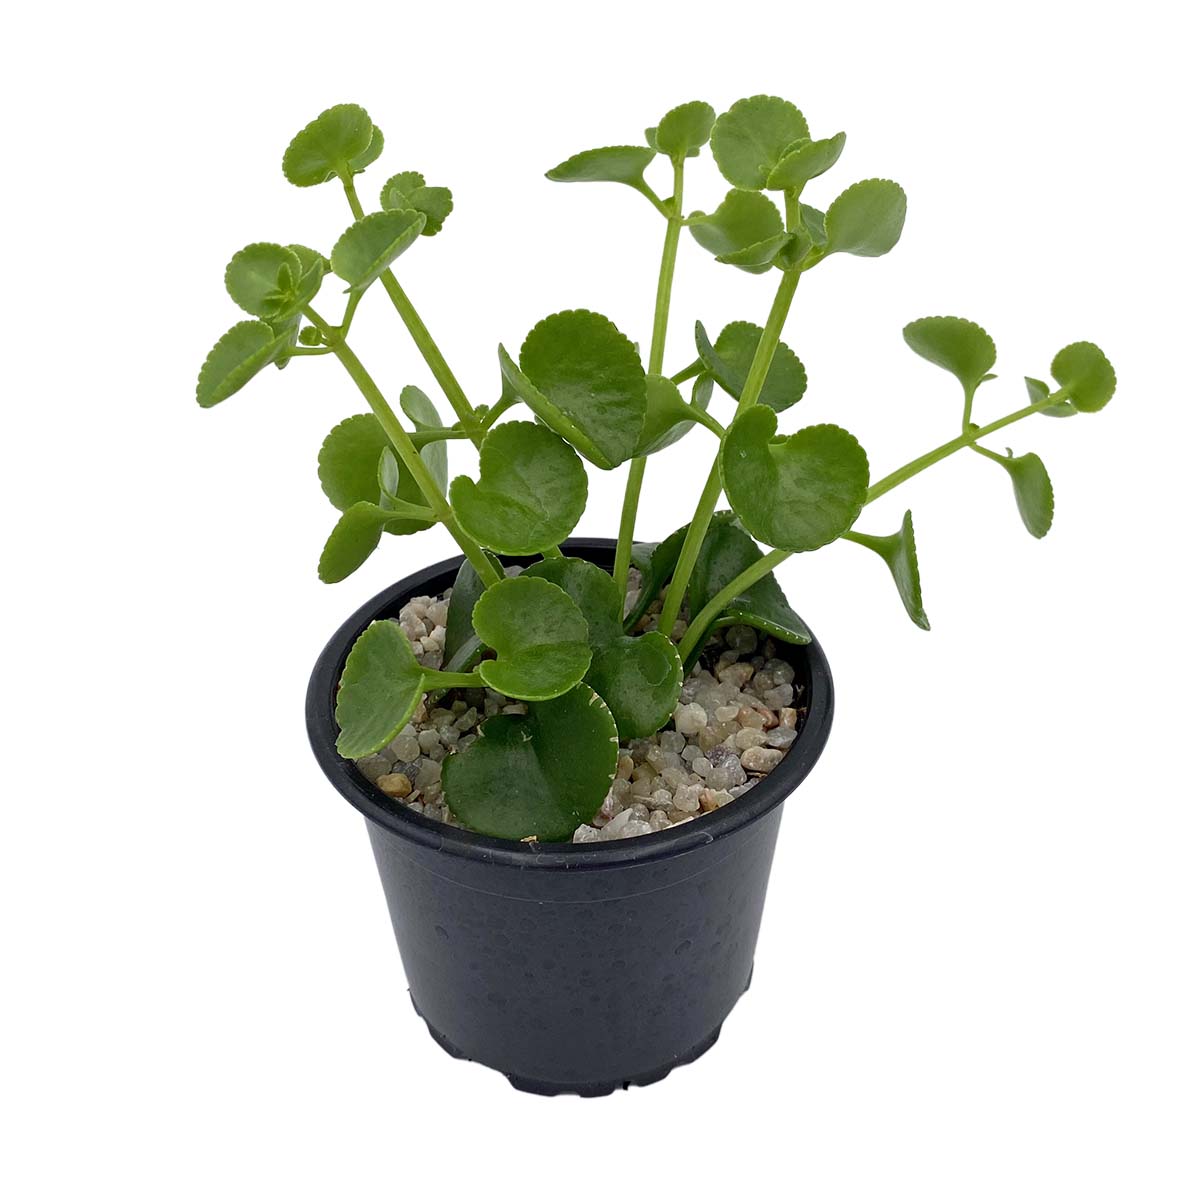 https://bo.cactijardins.com/FileUploads/produtos/as-nossas-plantas/peperomia/cactijardins_peperomia_rotundifolia_ref2477_1.jpg